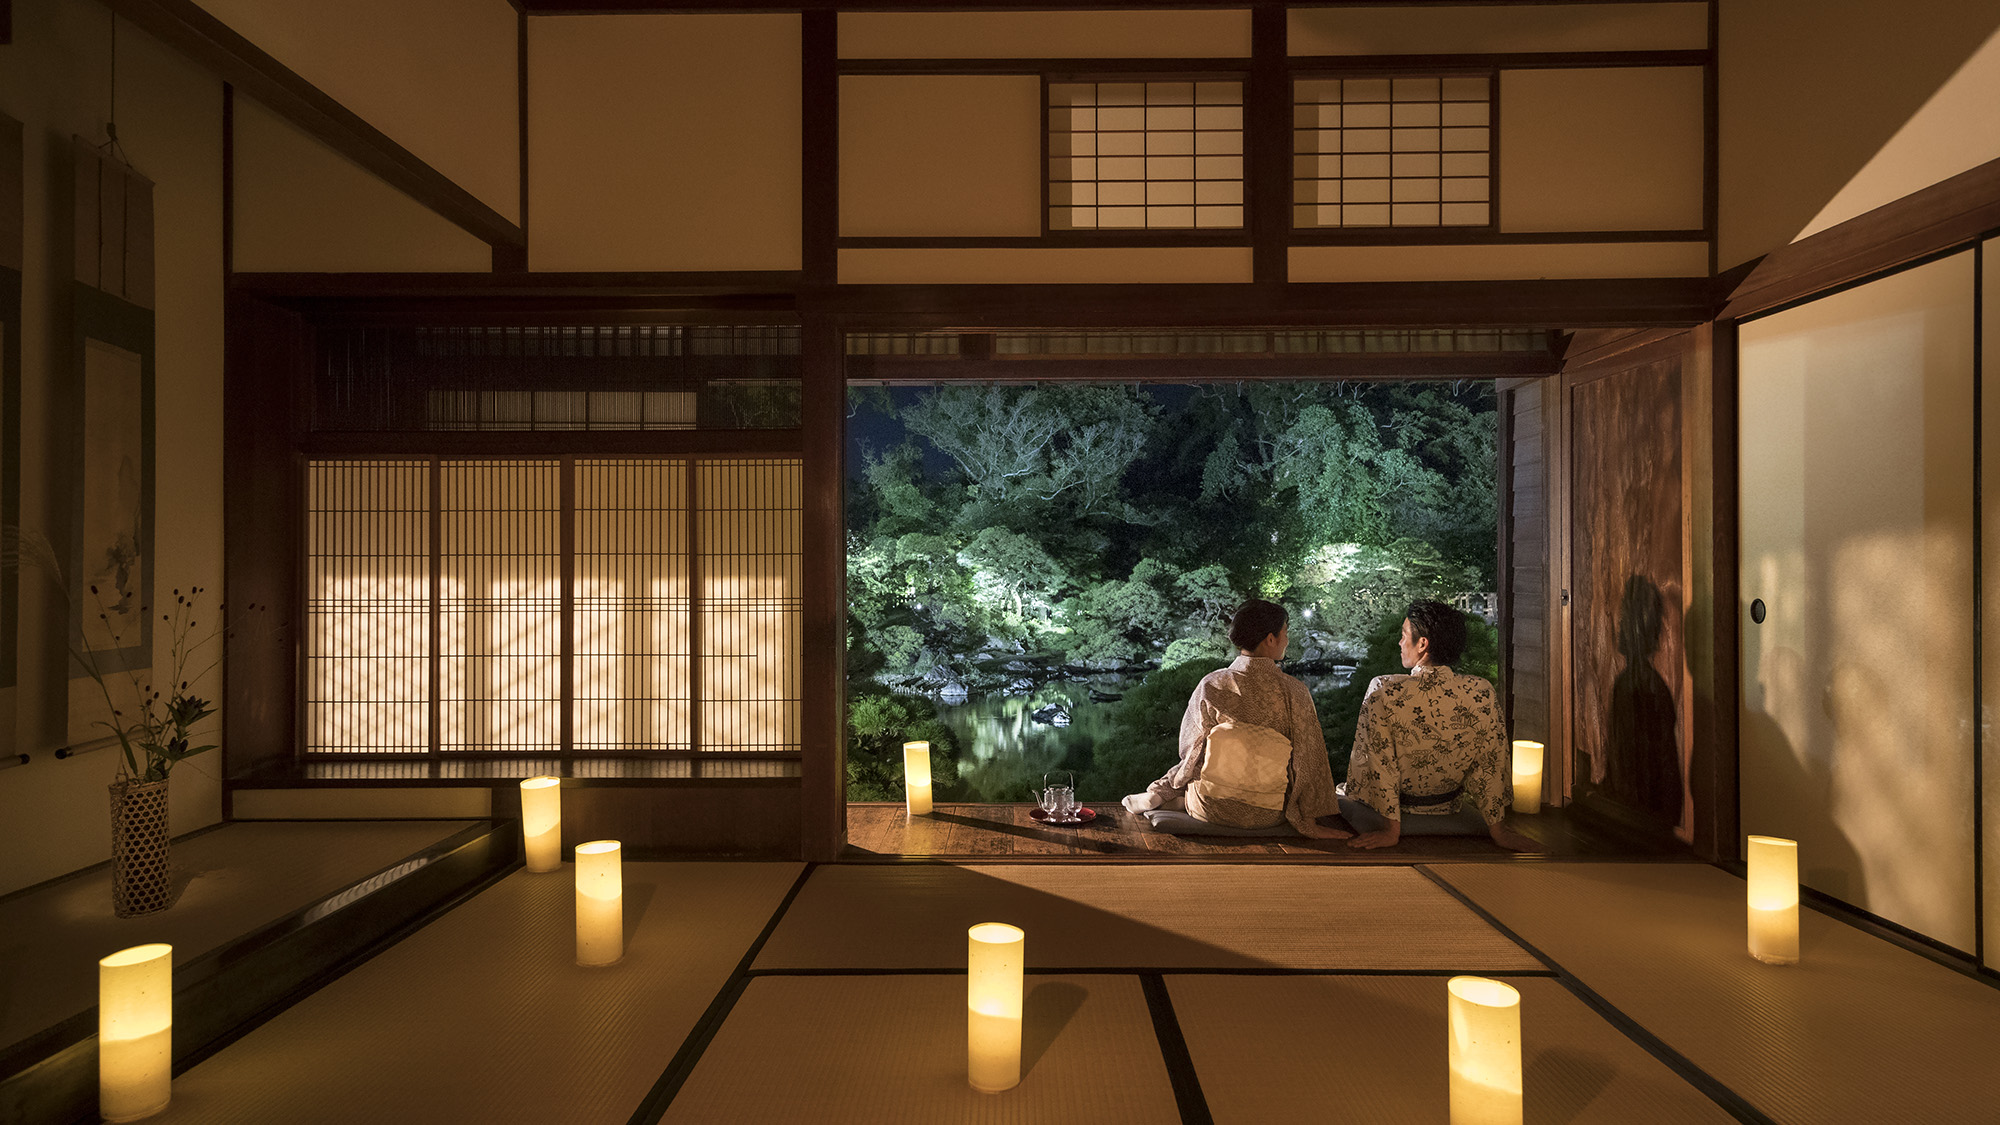 *・【松濤園の灯篭灯り】淡い光が映し出す美しい松濤園。ご宿泊のお客様だけがご堪能出来る絶景です。